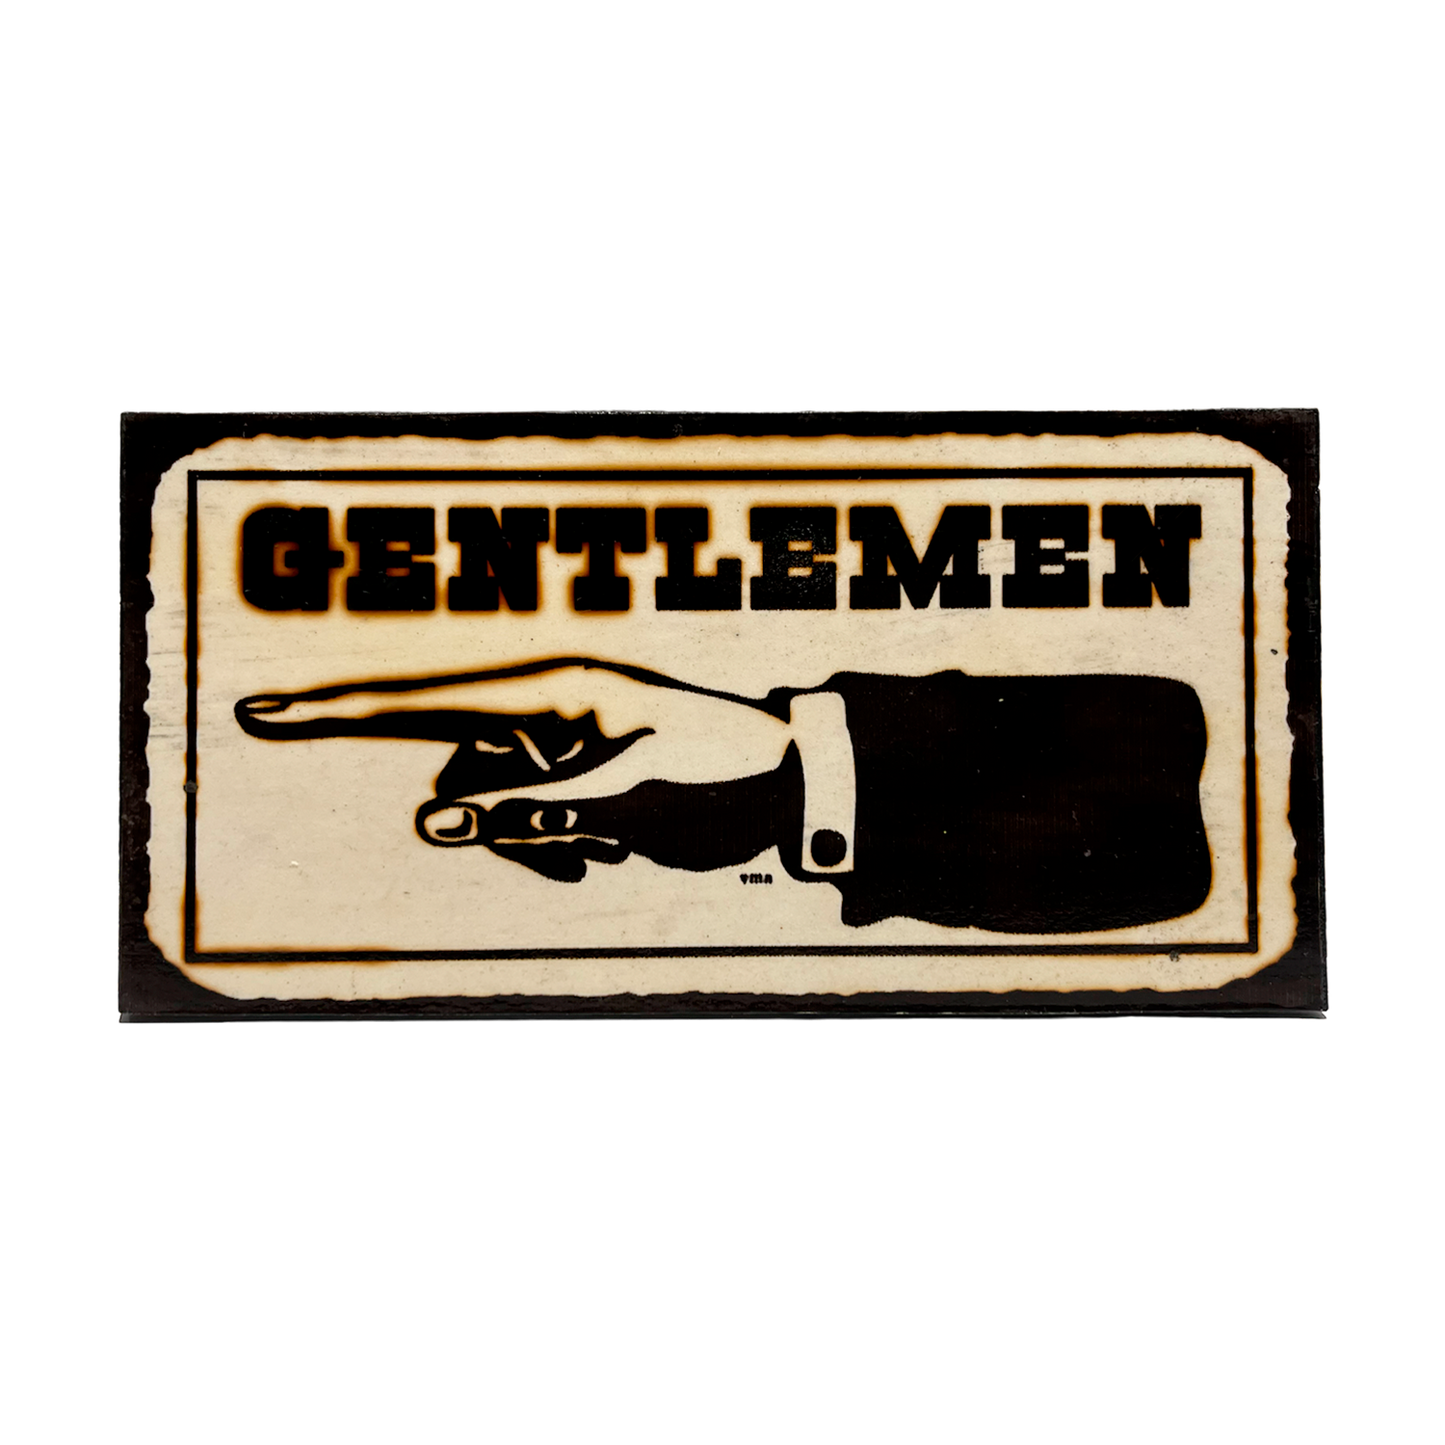 Afiche "Gentlemen"